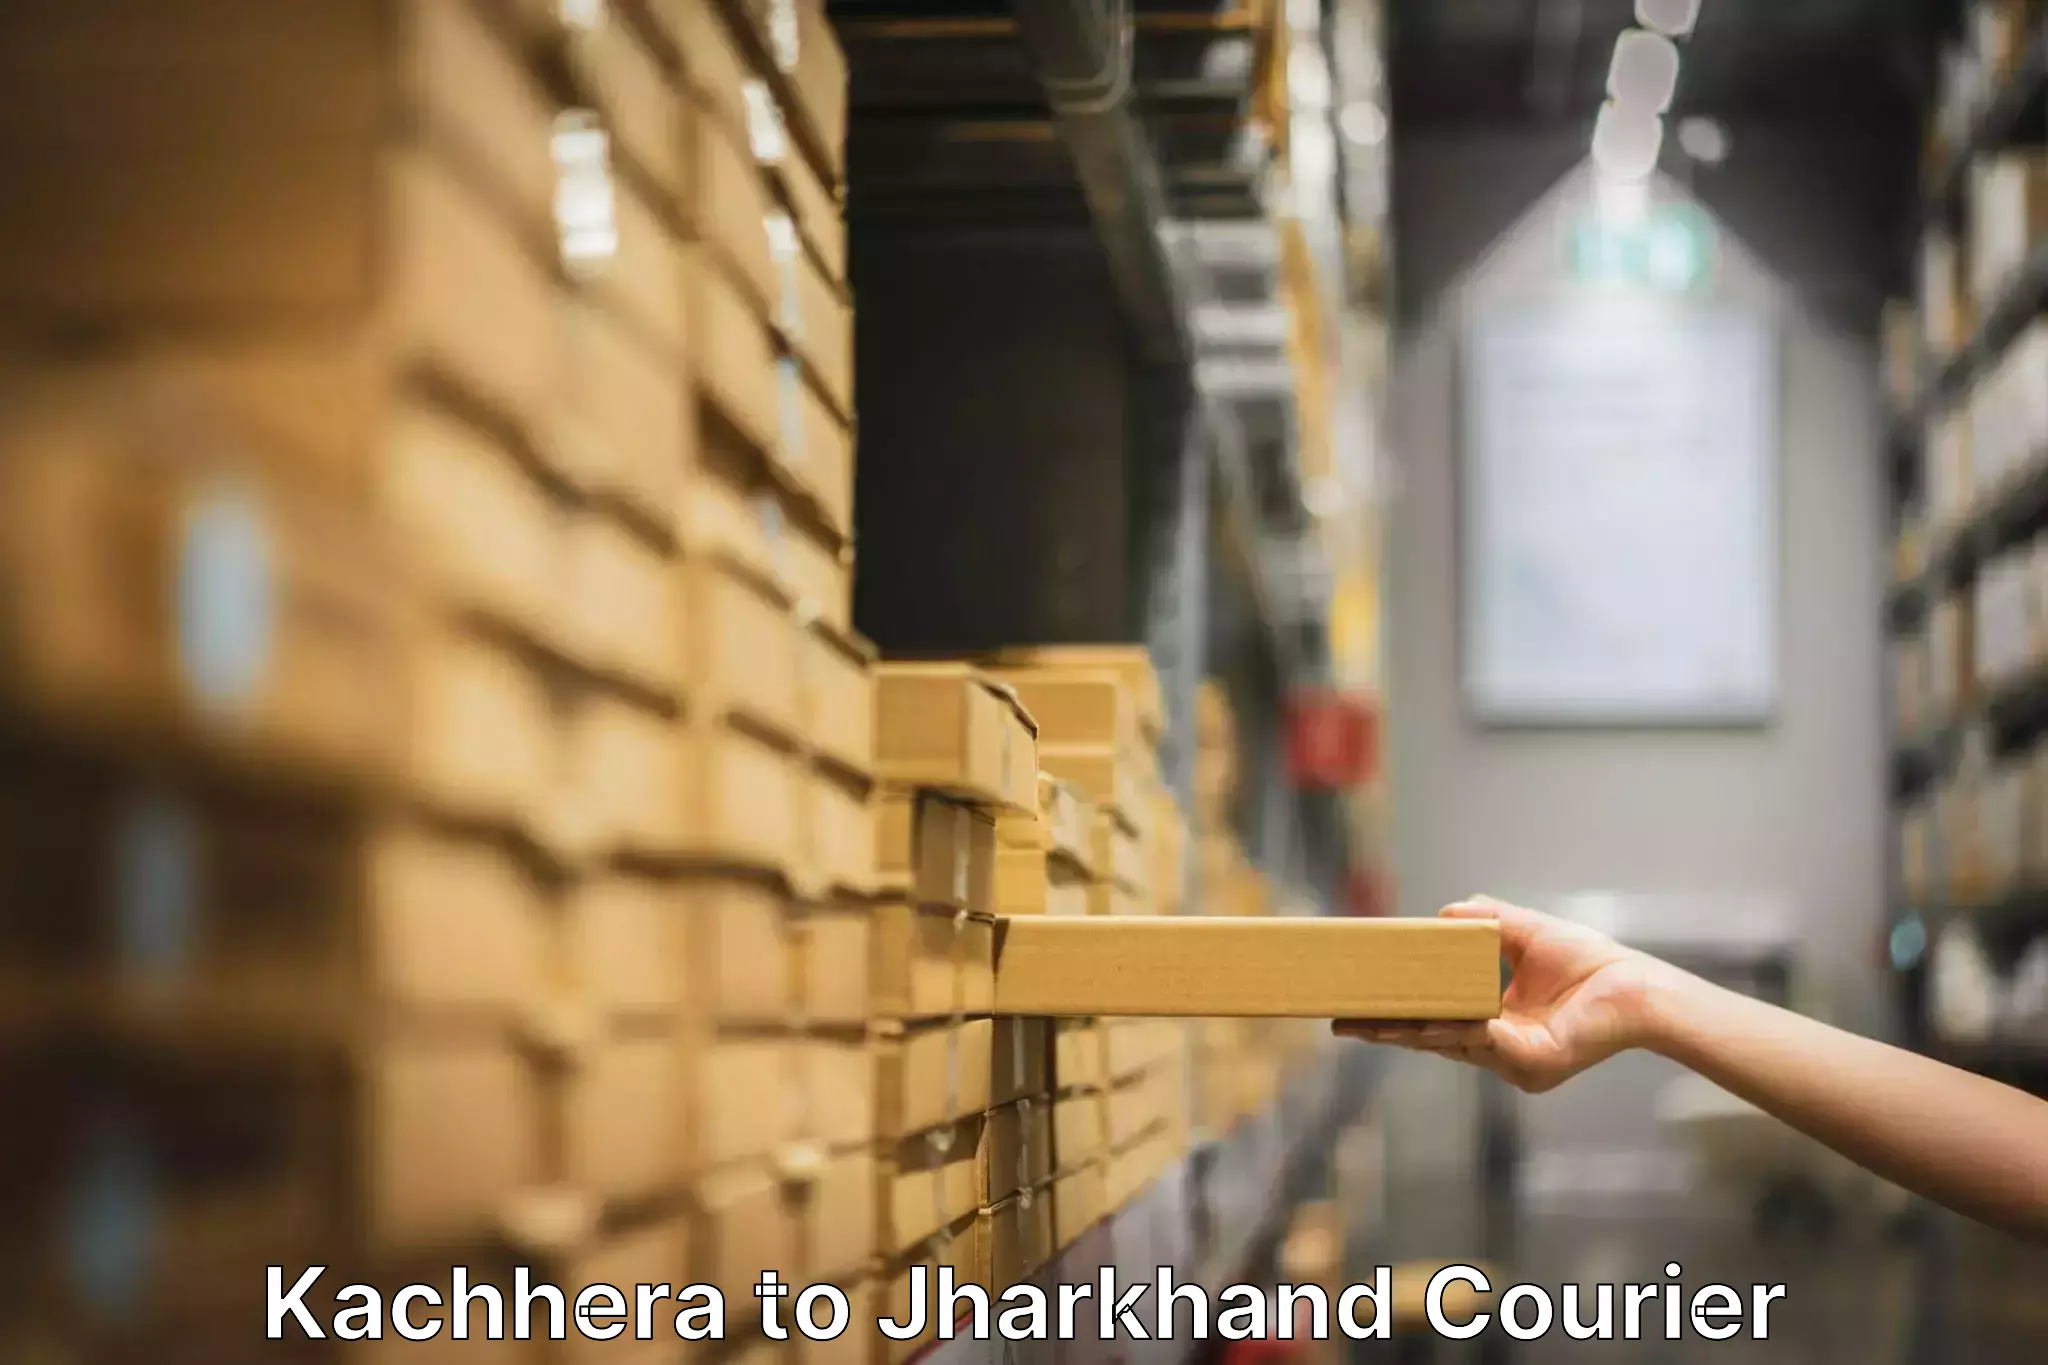 Professional moving company Kachhera to Chandil